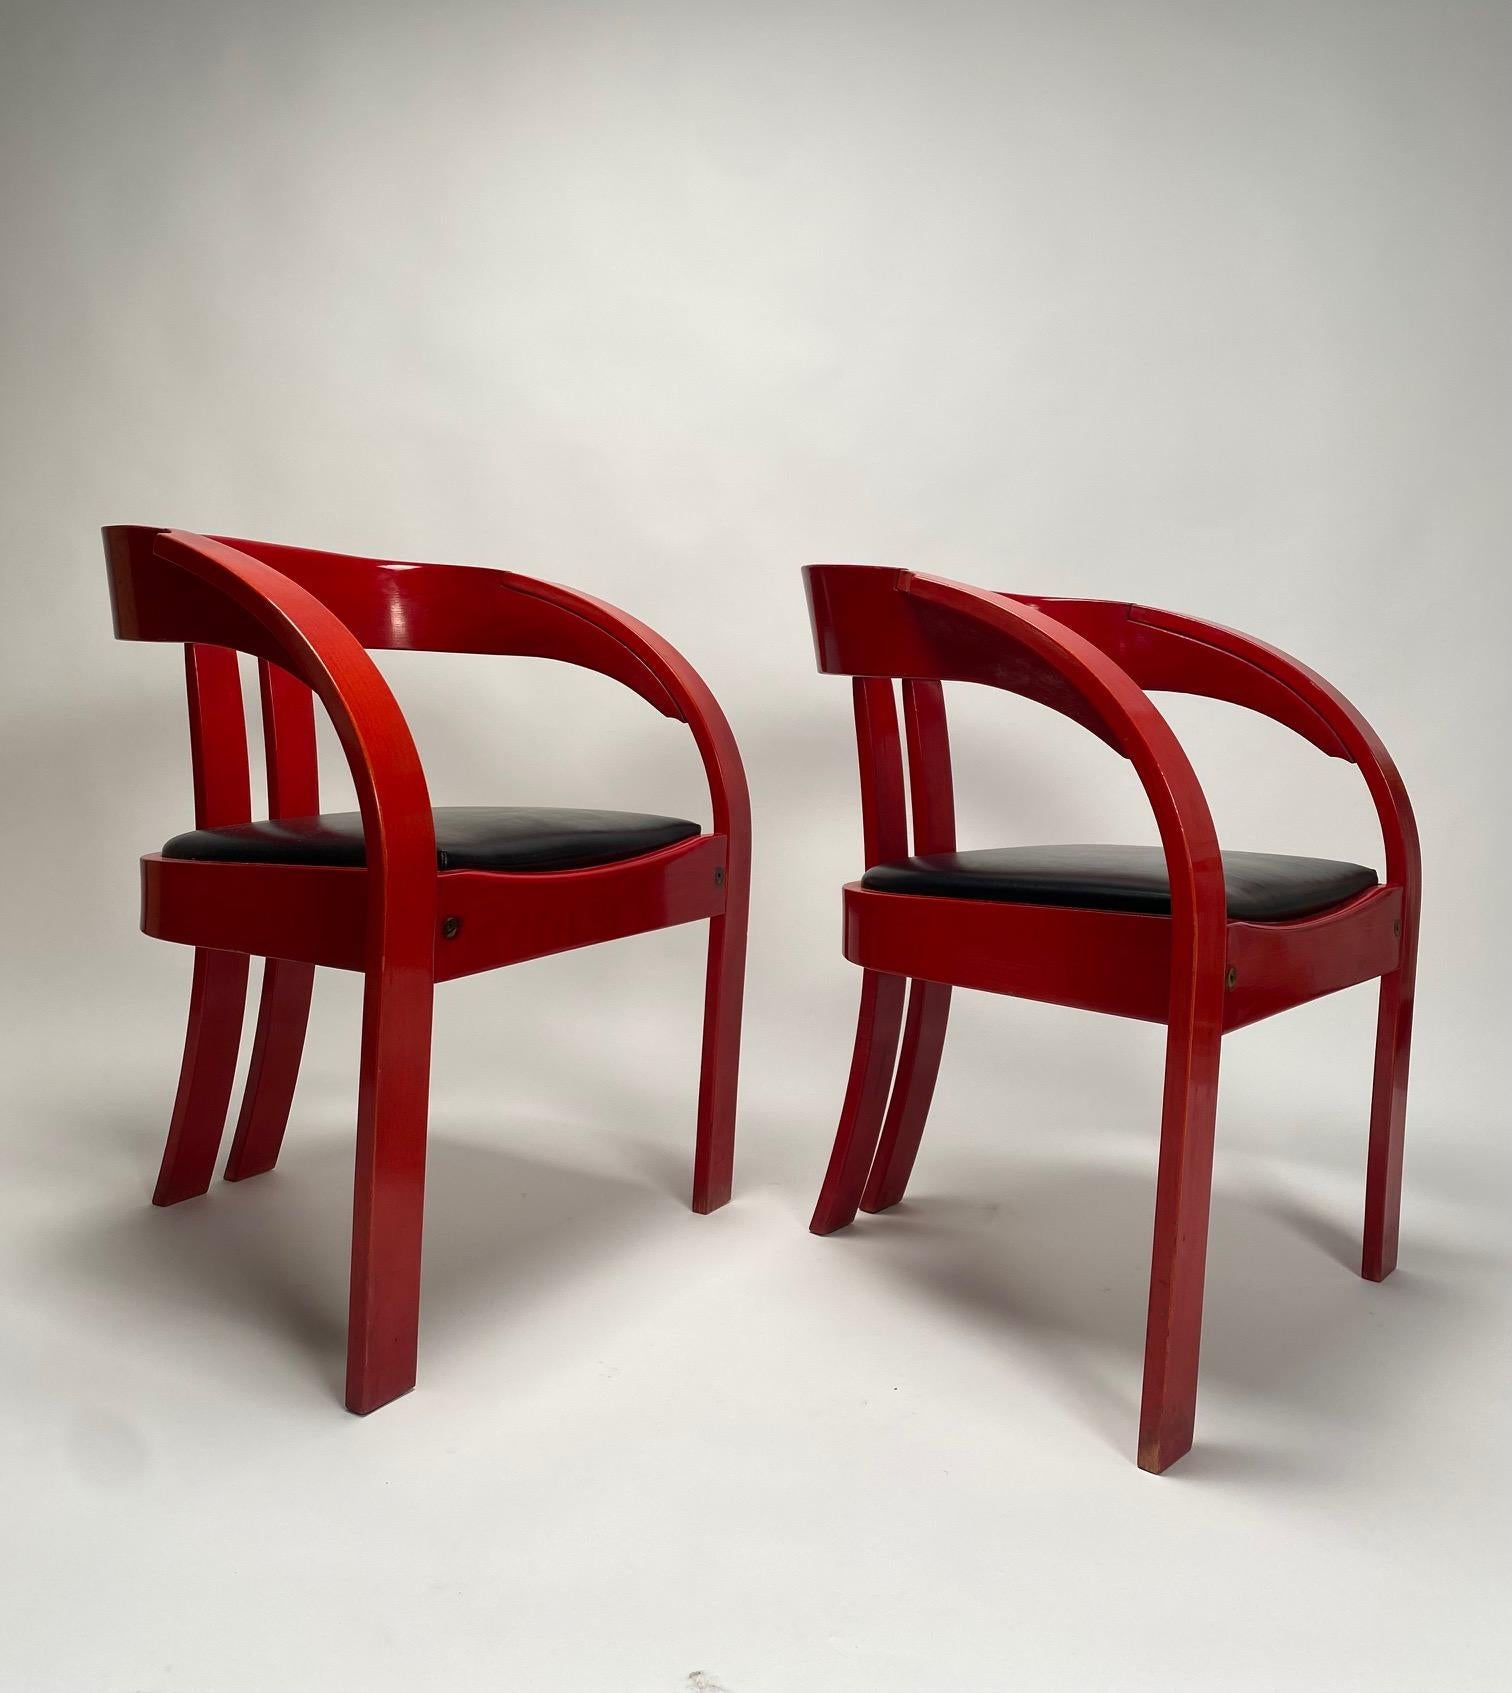 Ensemble de quatre fauteuils de Giovanni Battista Bassi, bois laqué, cuir Italie années 1960 .
 Fauteuil en bois laqué rouge avec revêtement en cuir noir. Conçu par l'architecte et designer Giovanni Battista Bassi. 